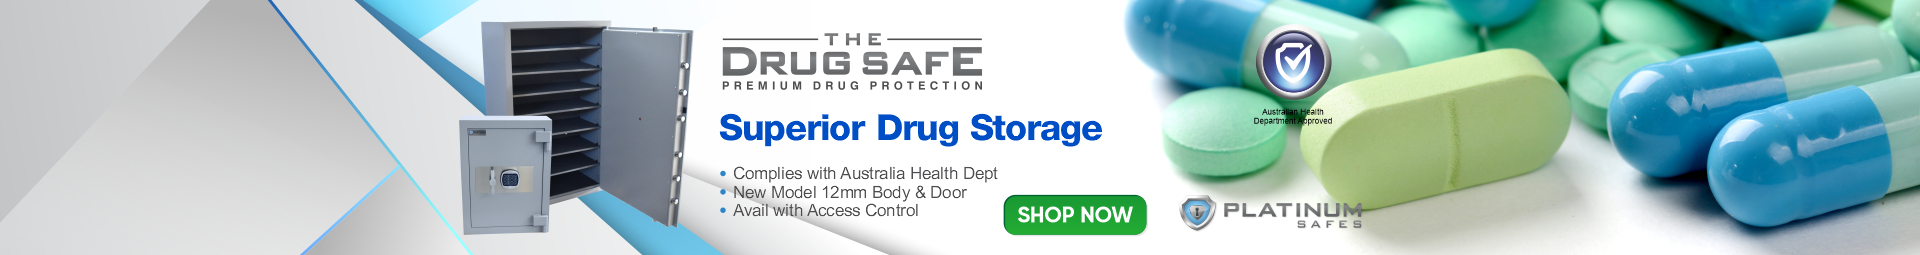 Drug Safes - Shop Now